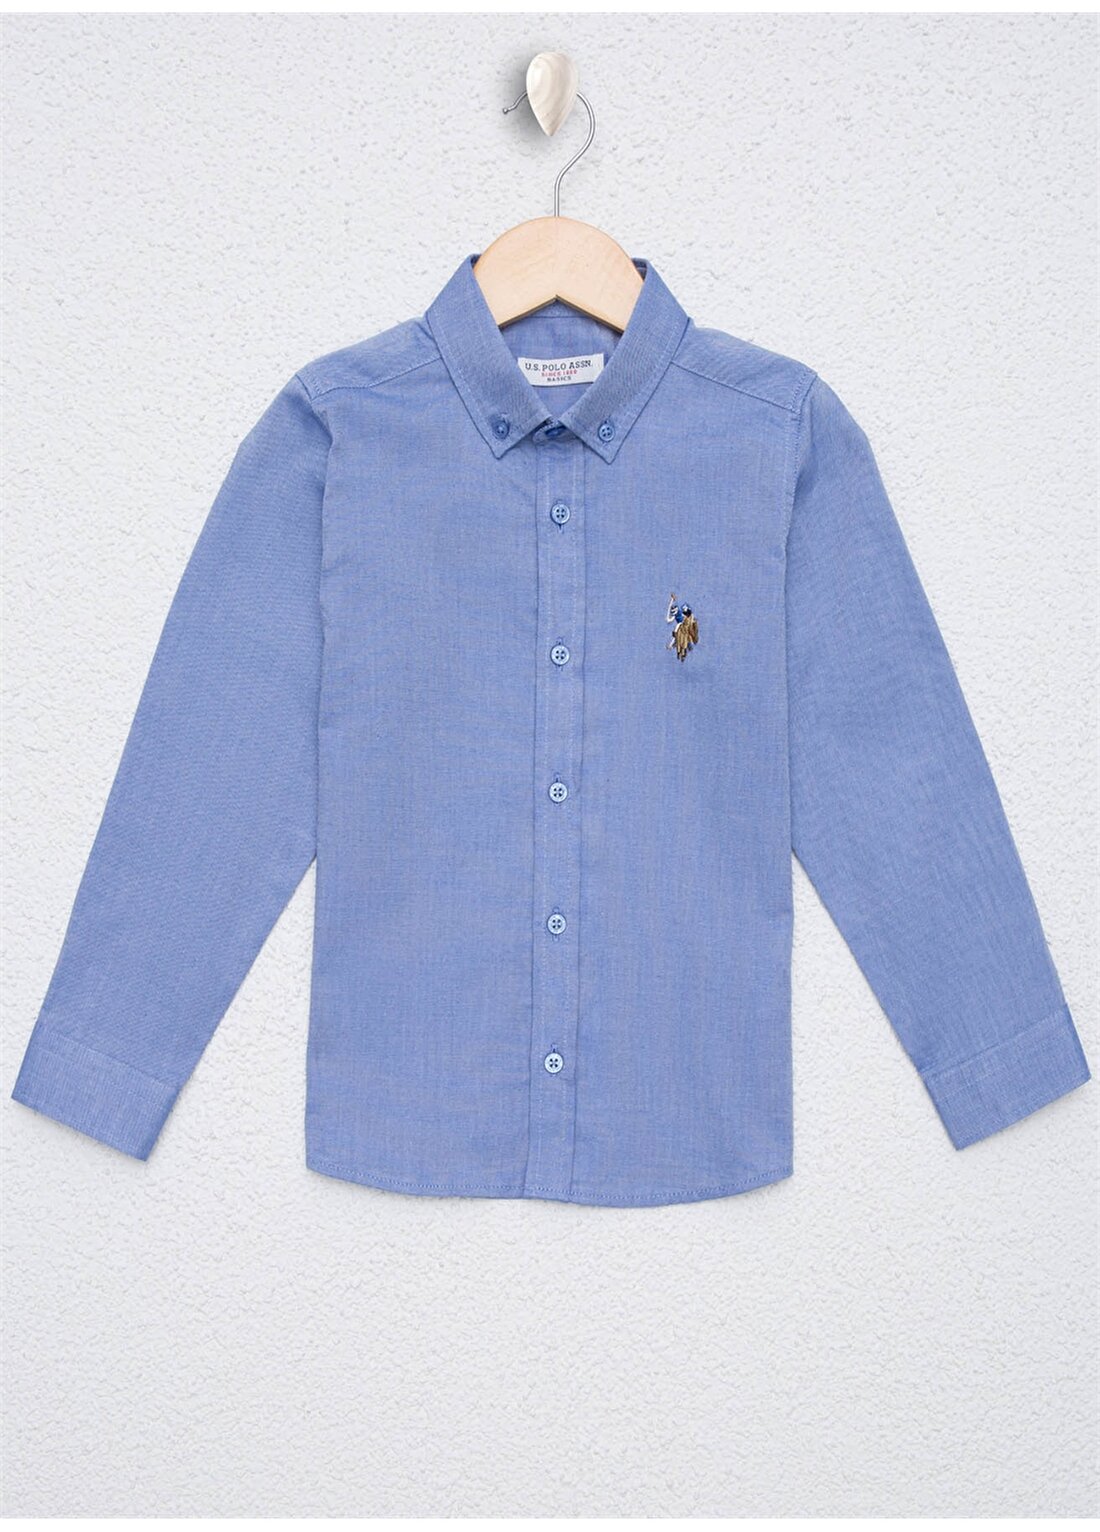 U.S. Polo Assn. Desenli Koyu Mavi Erkek Çocuk Gömlek CEDCOLORKIDS020K-VR032